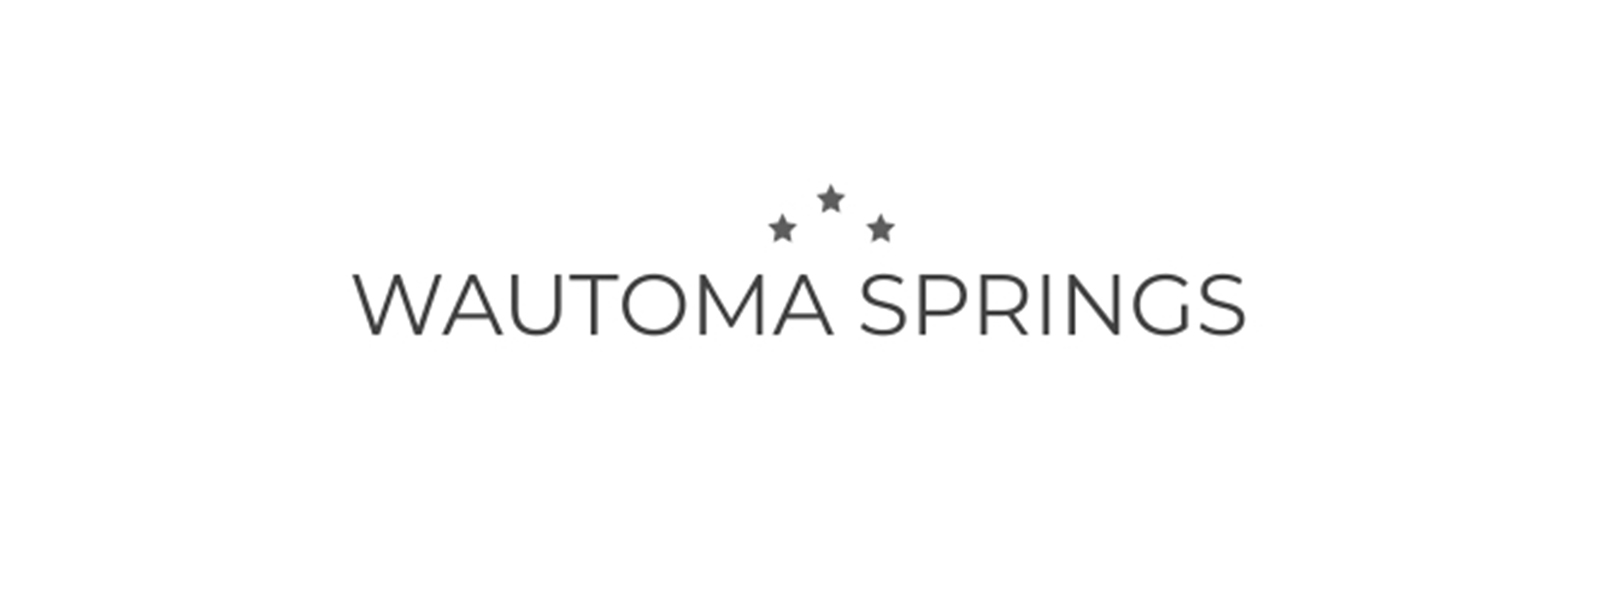 logos-Wautoma Springs